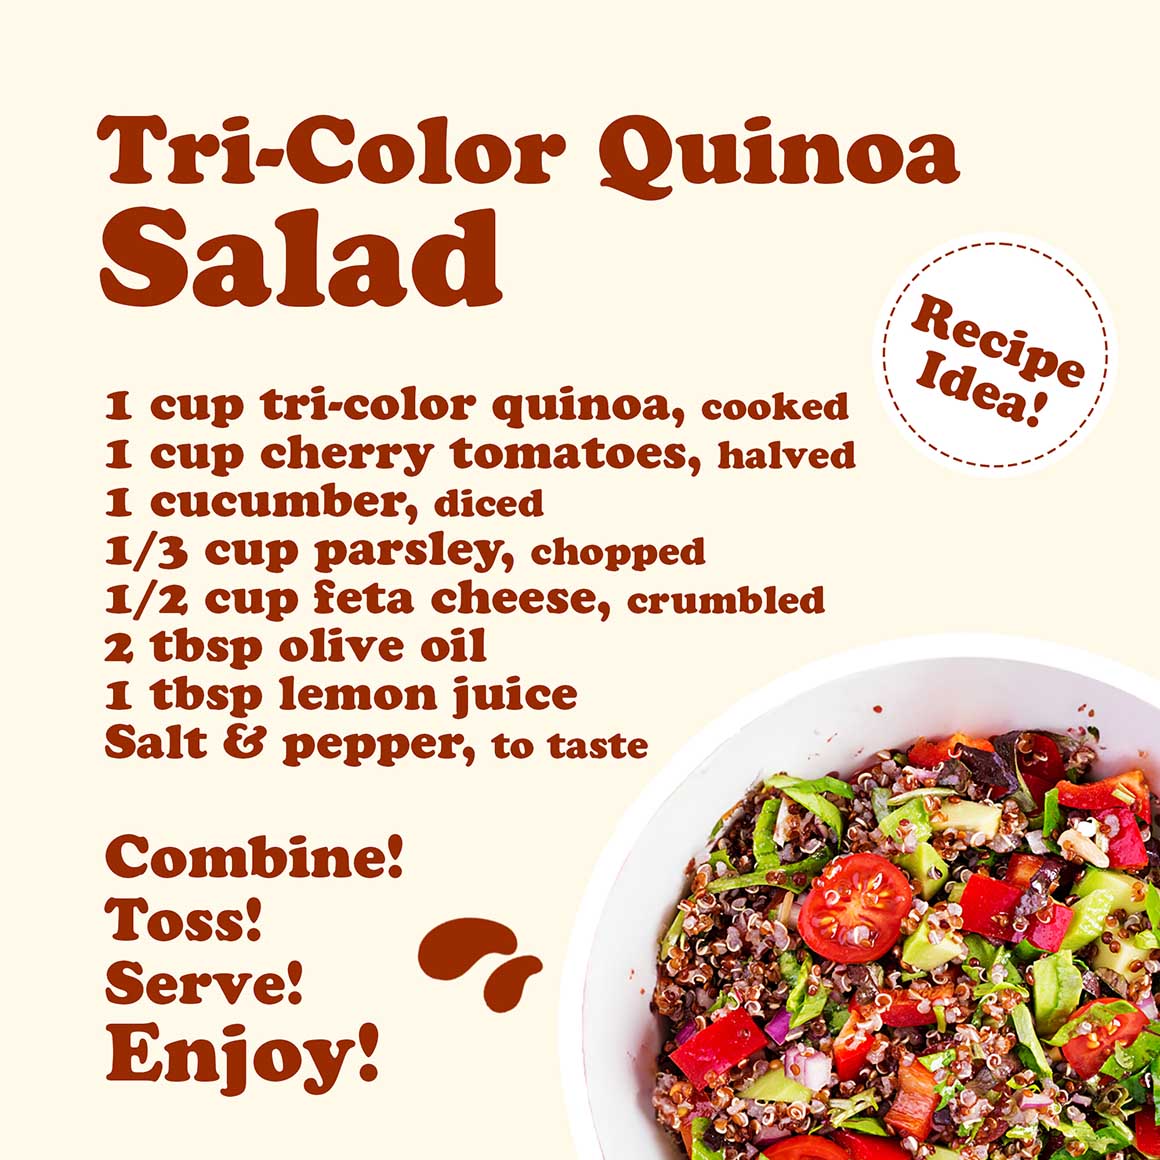 tri-color-quinoa-5-min-upd